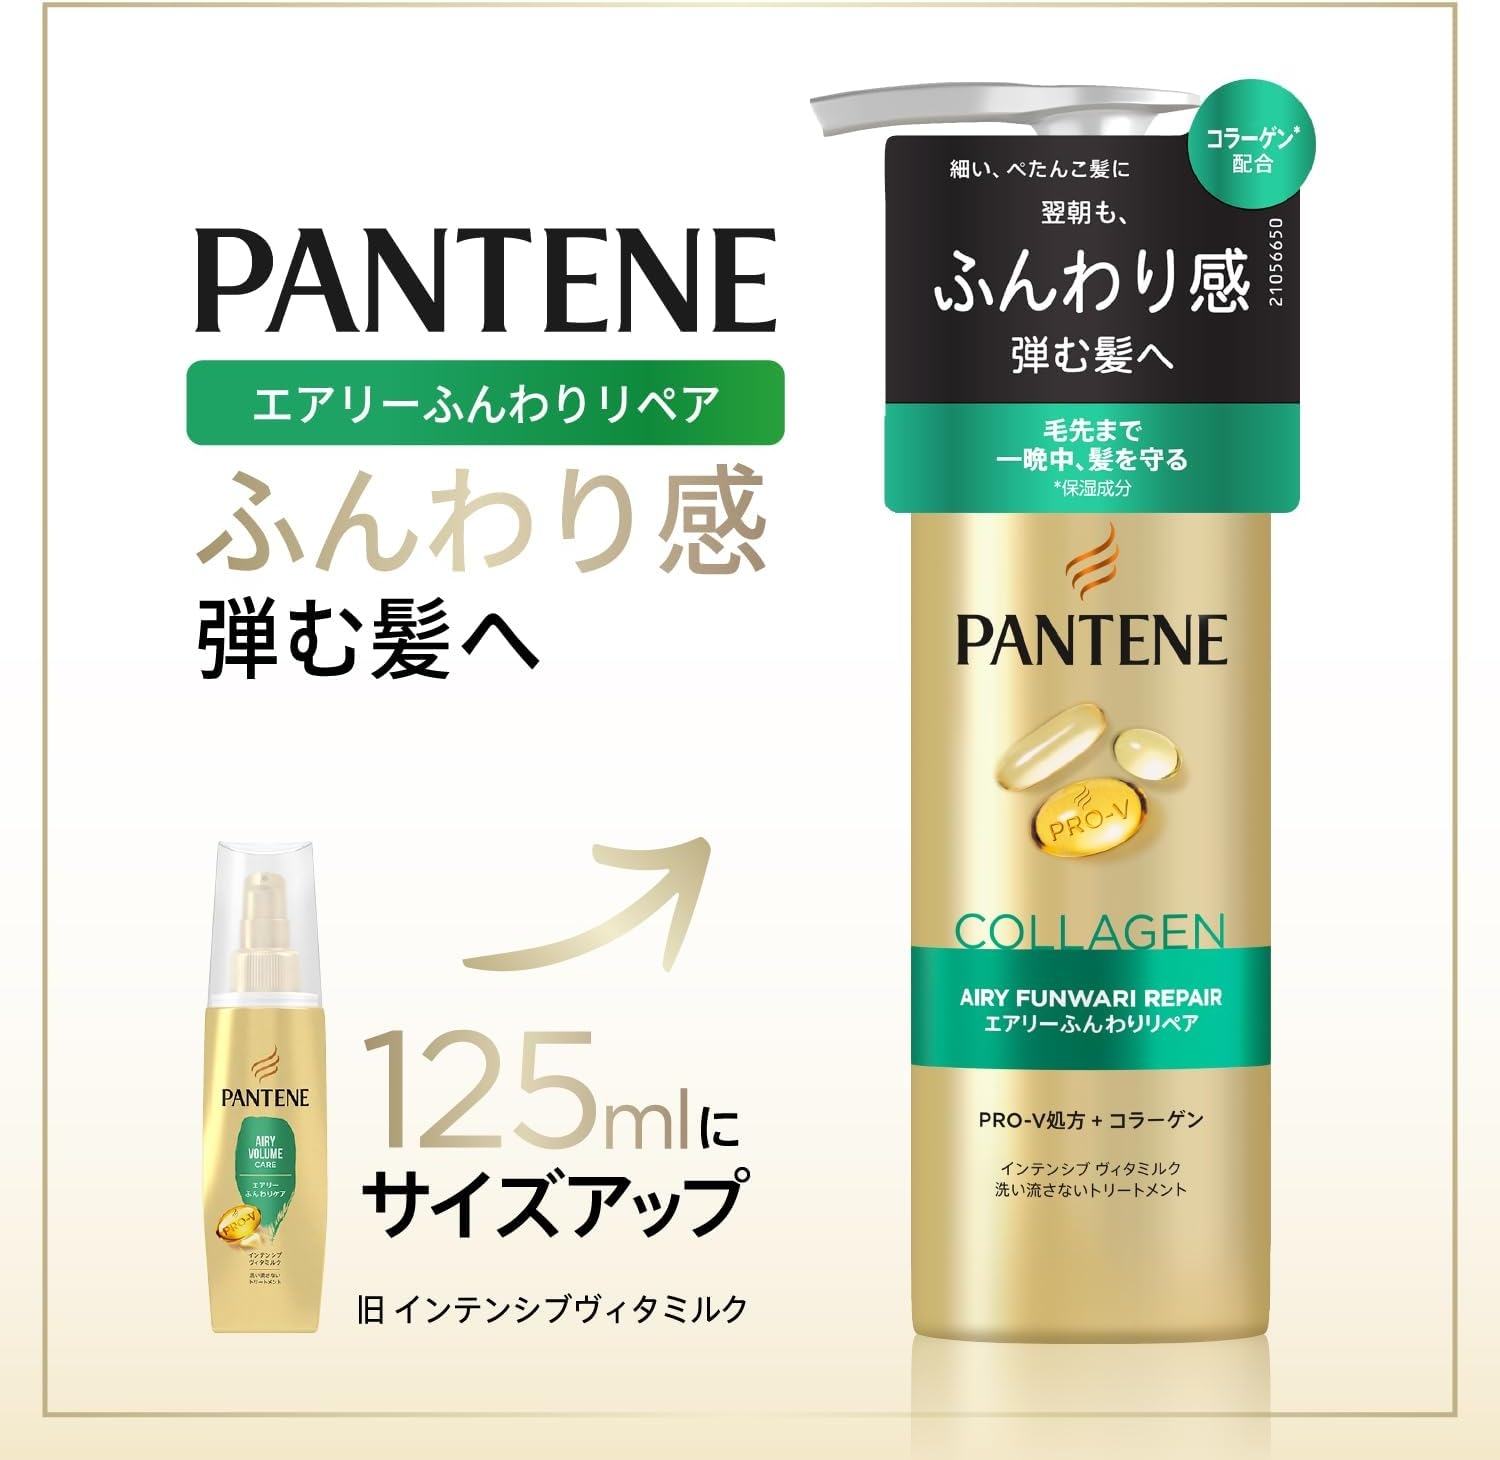 PANTENE(パンテーン) エアリーふんわりリペア インテンシブ ヴィタミルクの商品画像2 